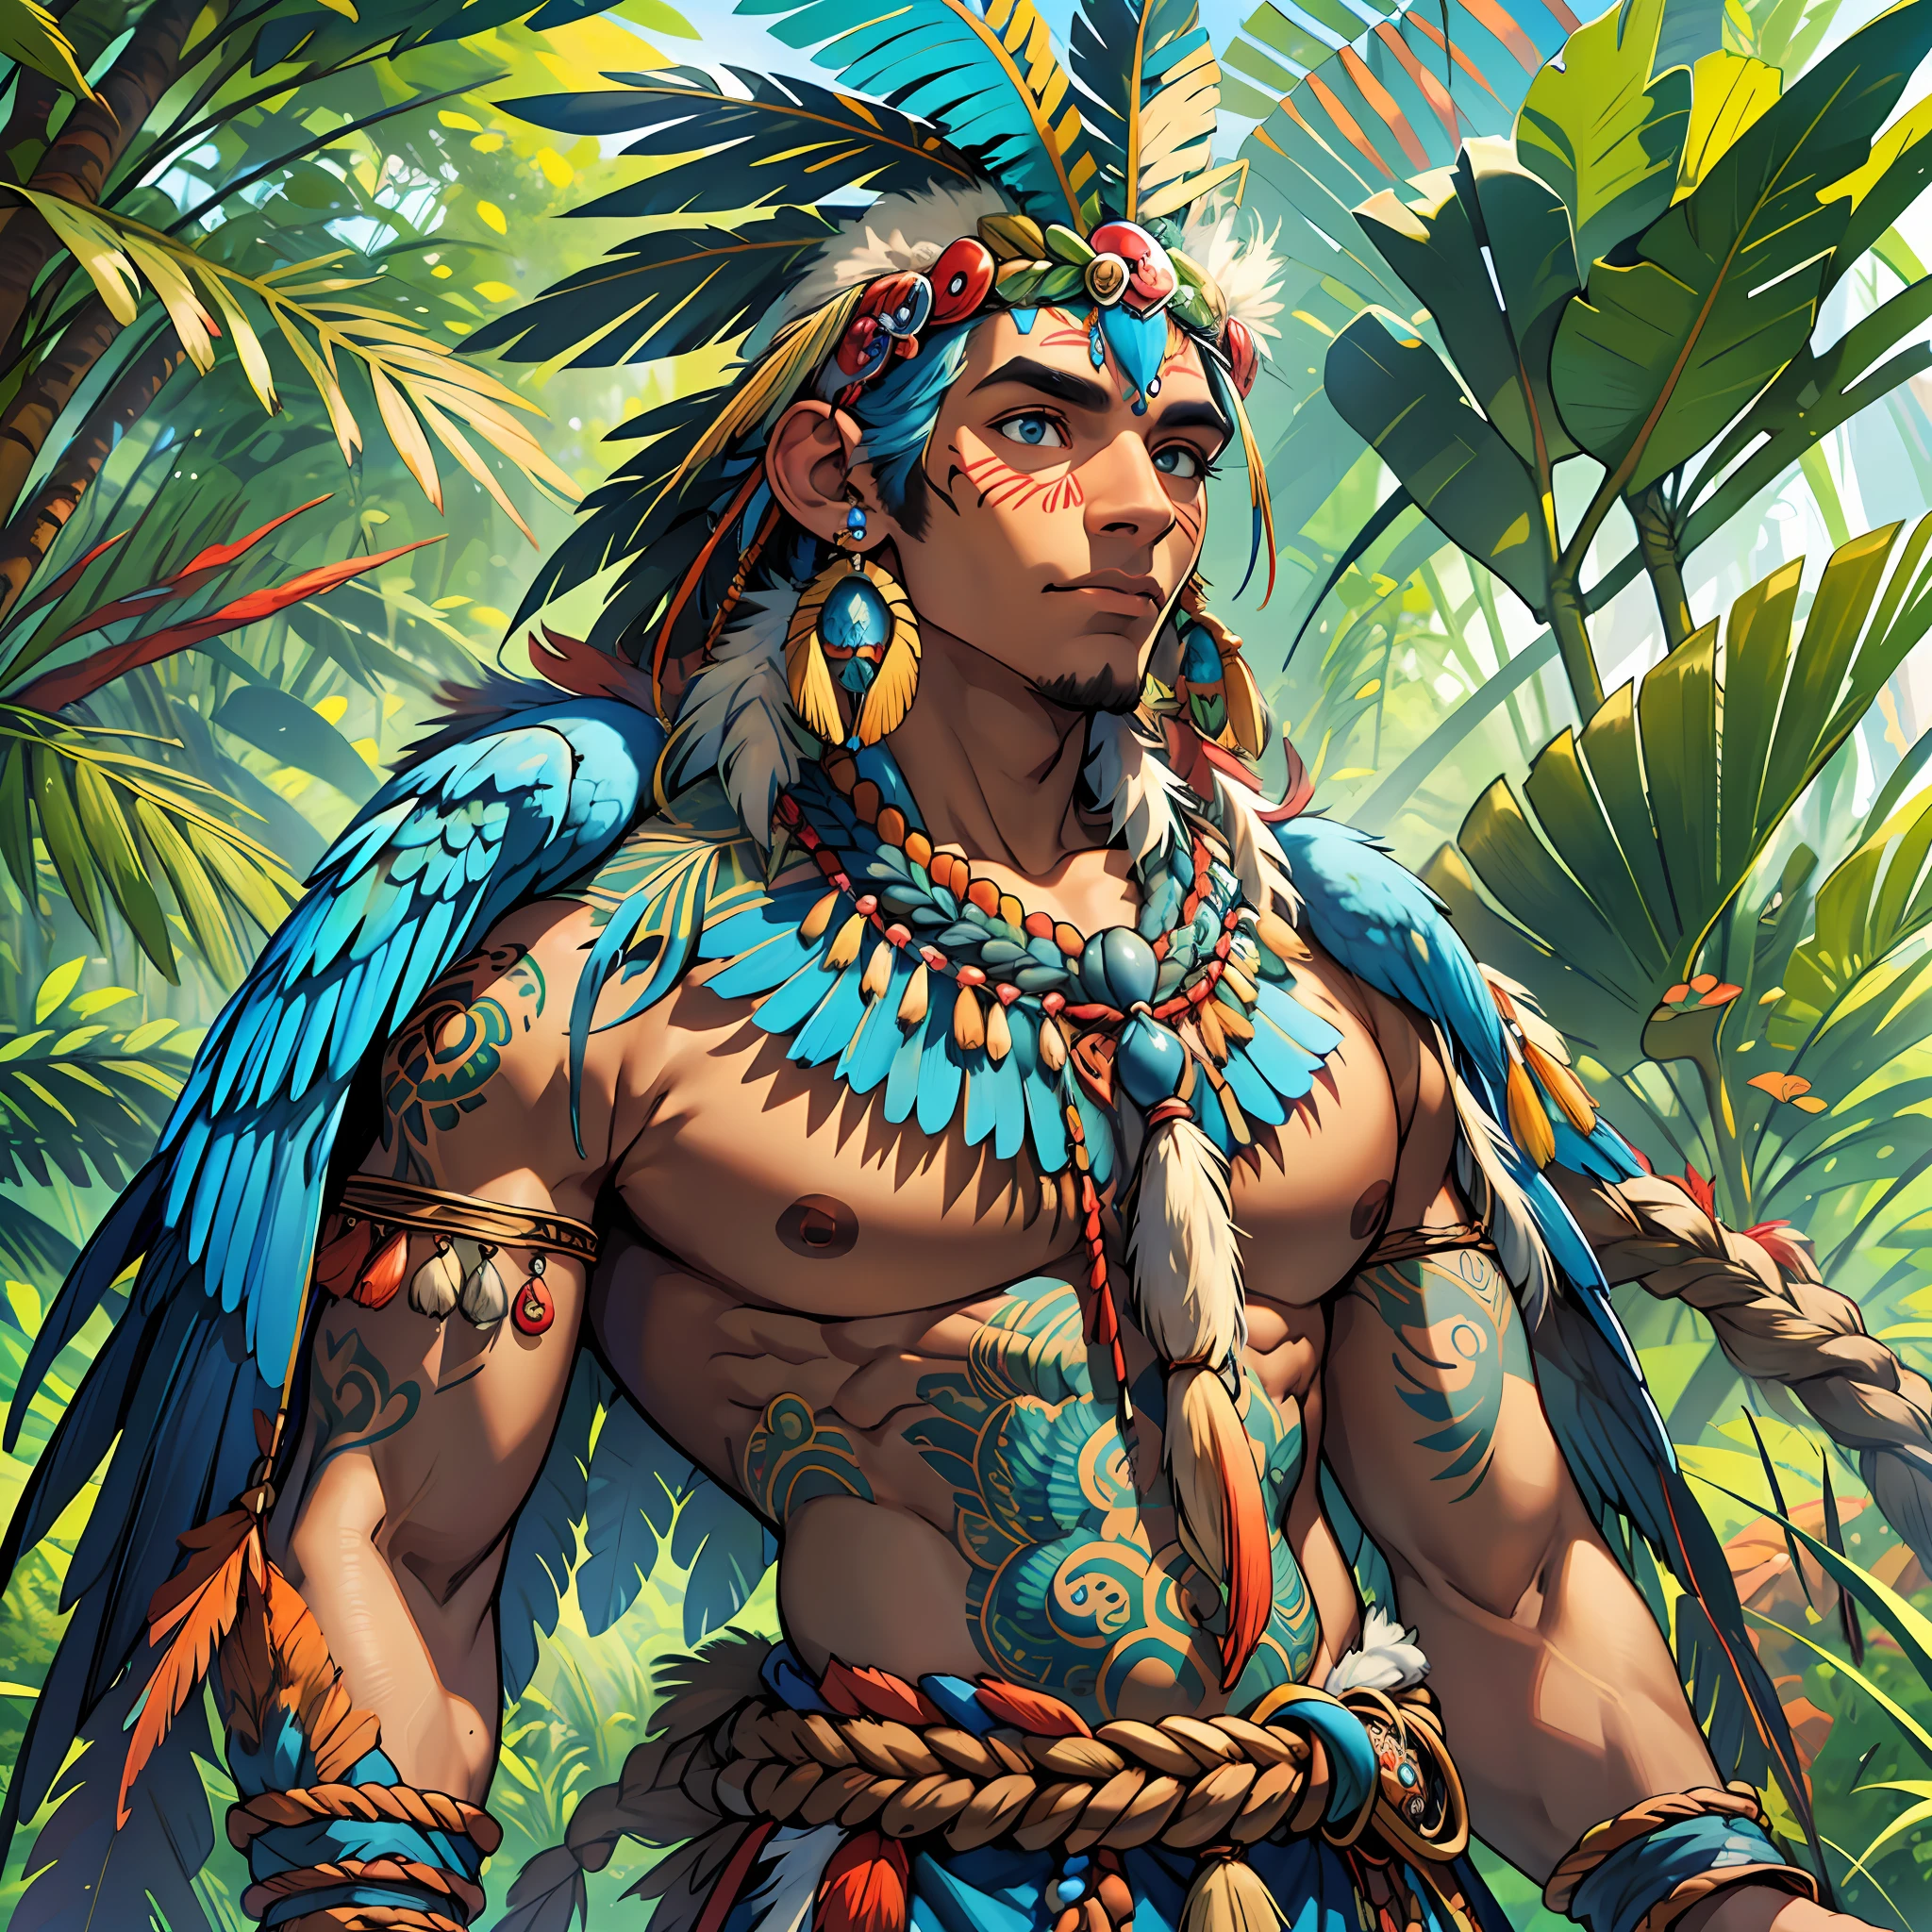 Антропозооморфный гуманоидный бог с коричневой кожей, синими крыльями ара и человеческим телом и синим пером ара на теле., идеальное тело, священный хранитель леса, Бразильский, Божественные пейзажи Амазонки, одежда тупи гуарани